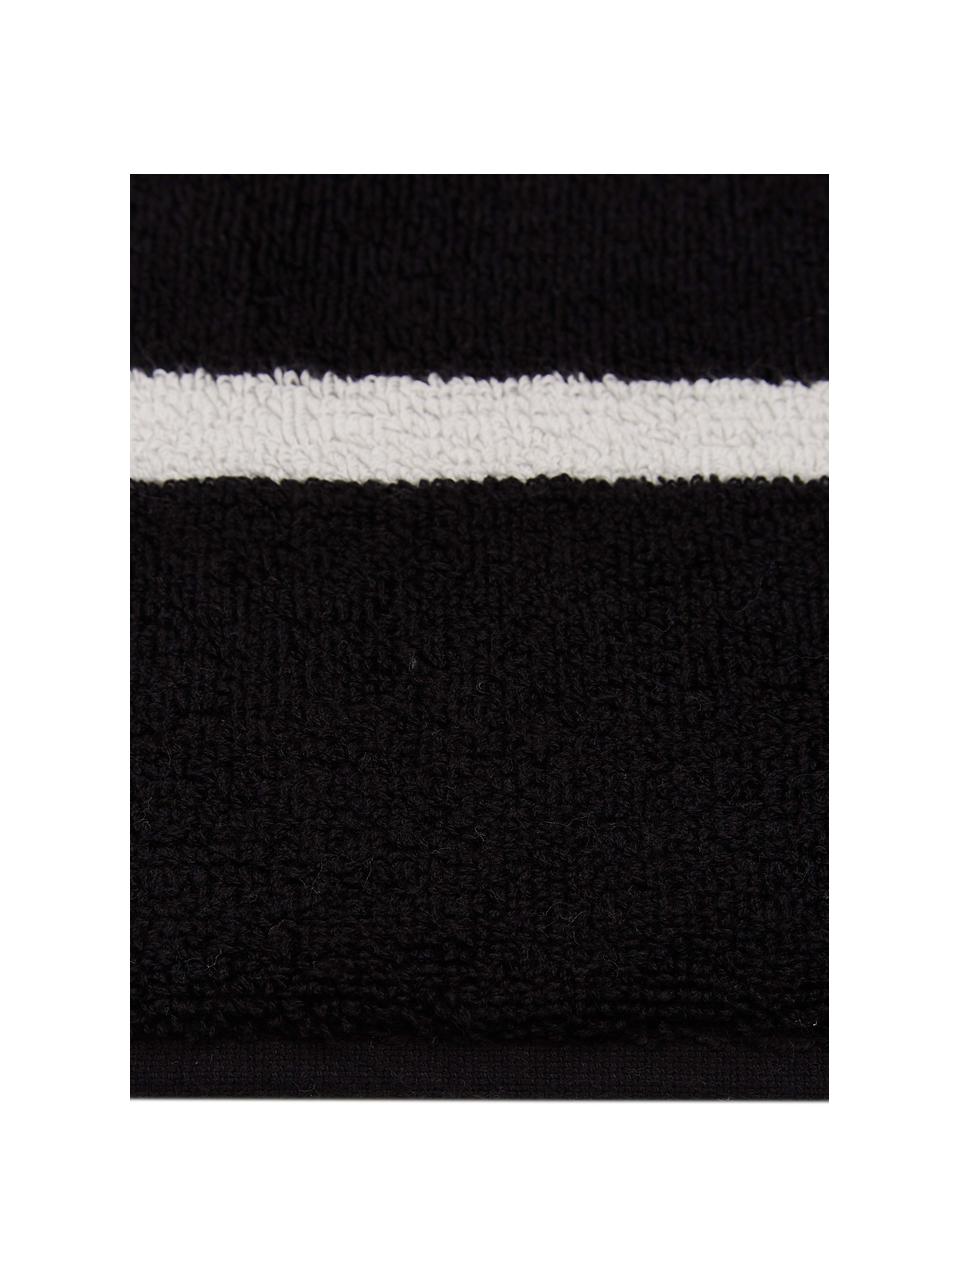 Dywanik łazienkowy Menton, 100% bawełna, Czarny, biały, S 50 x D 75 cm